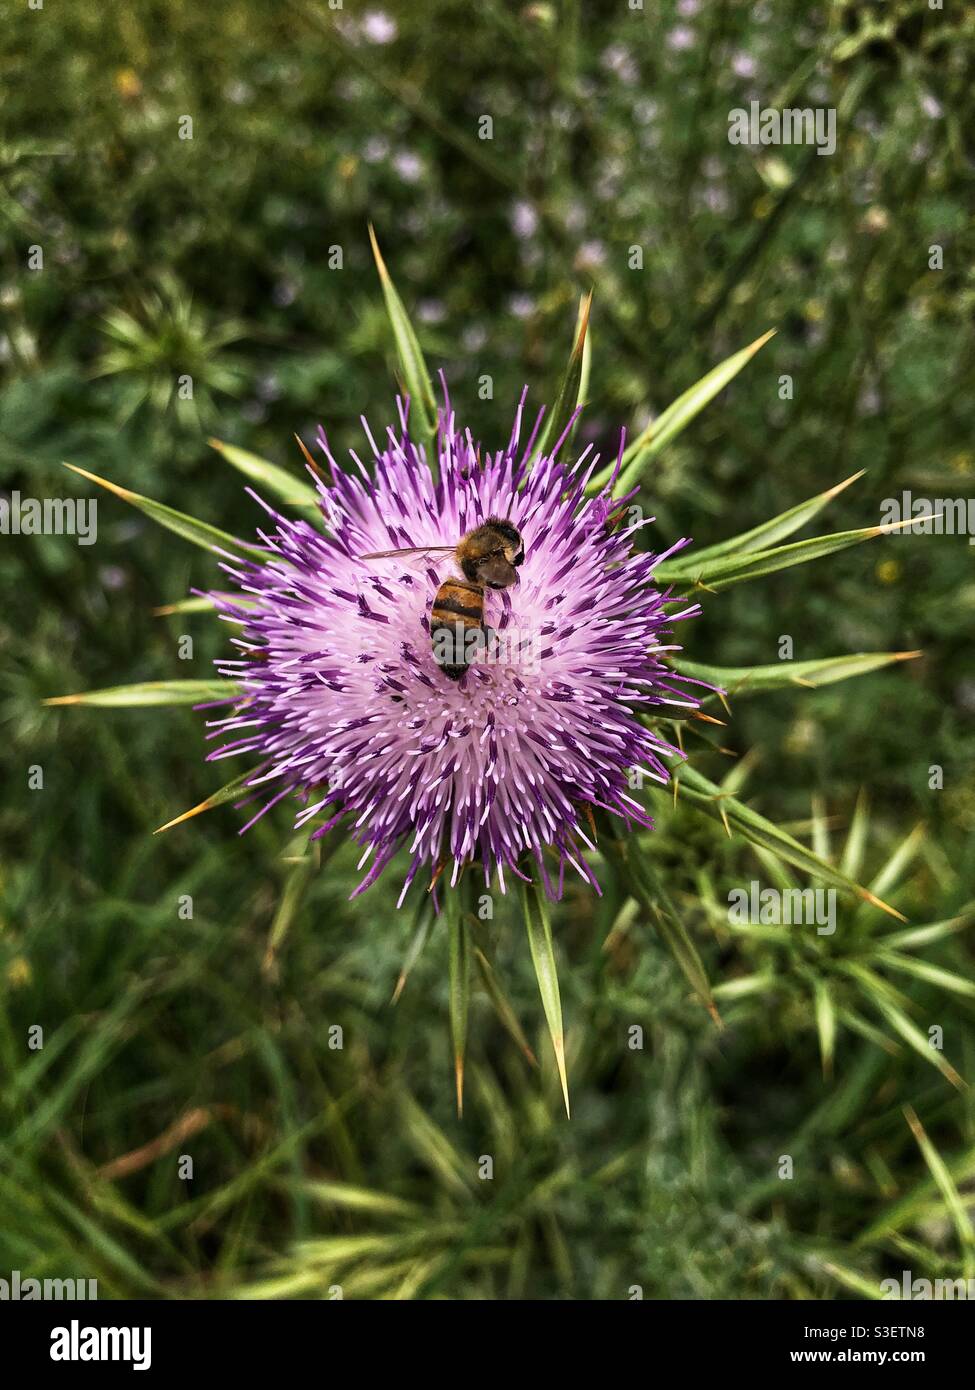 Honey bee on milk thistle plant Stock Photo